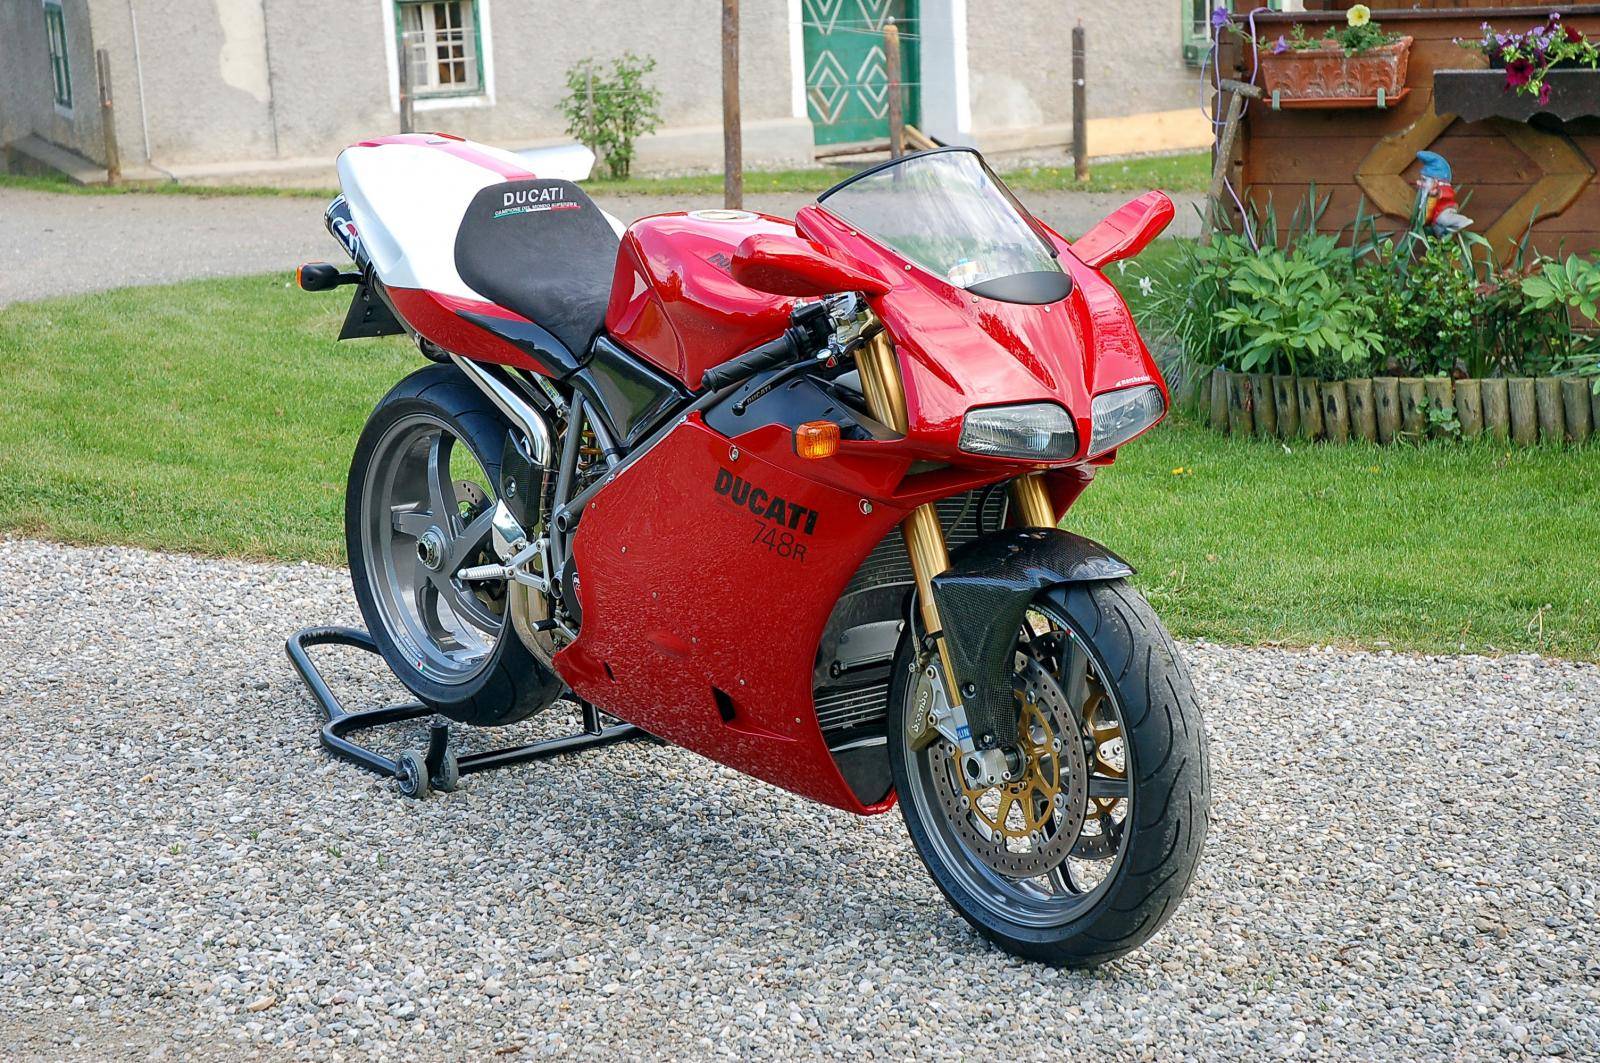 Мотоцикл ducati 748s 2001 фото, характеристики, обзор, сравнение на базамото